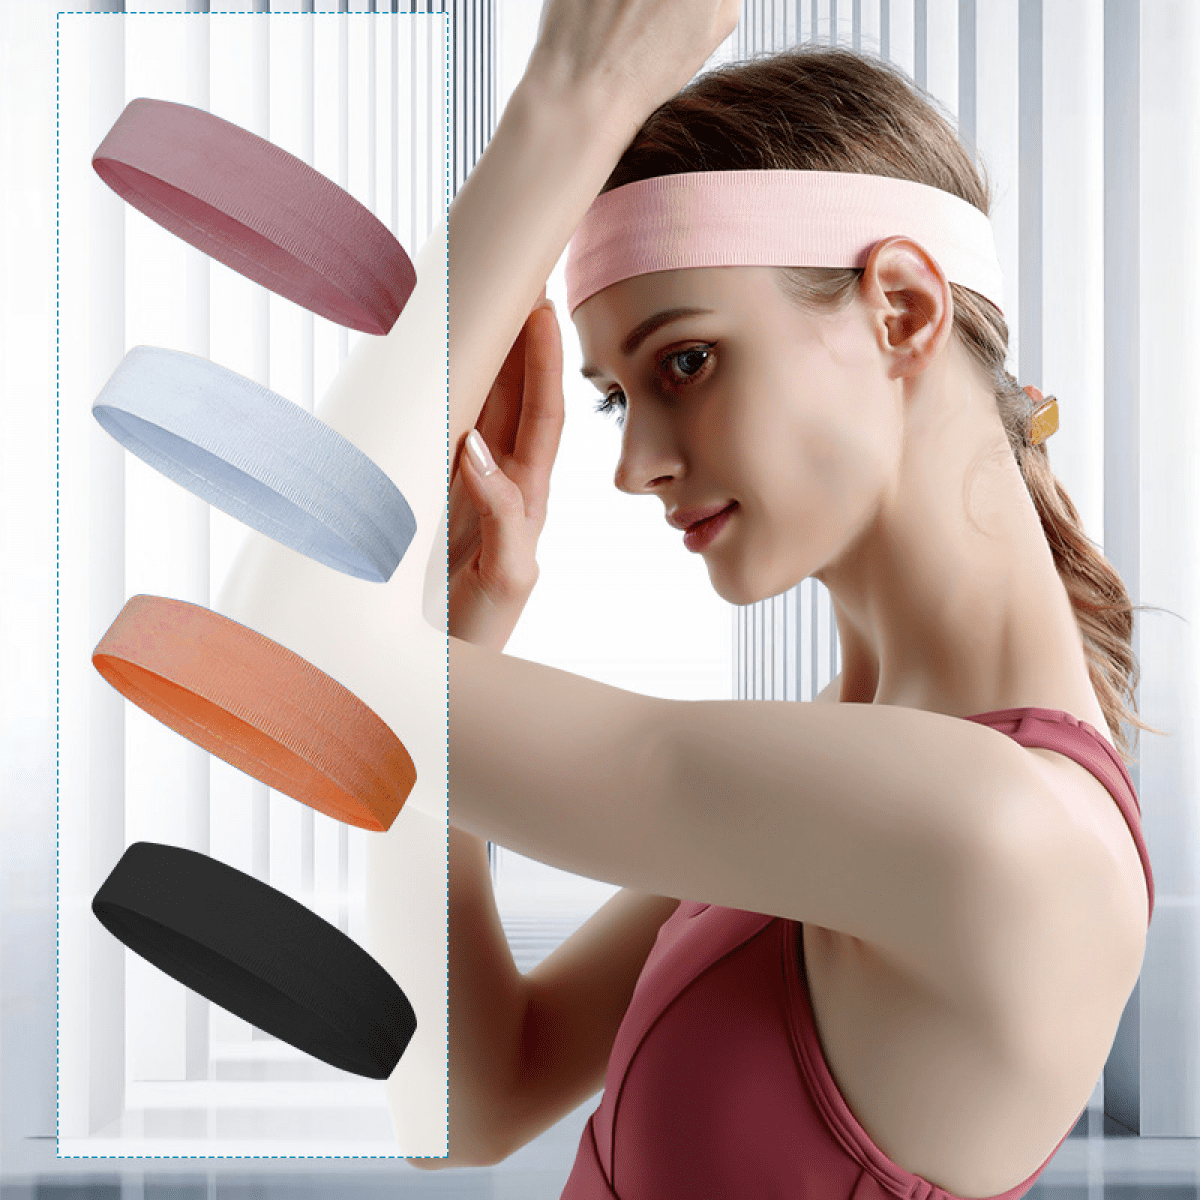 Workout sweatbands for Women Head,Sport Hair Bands for Women's